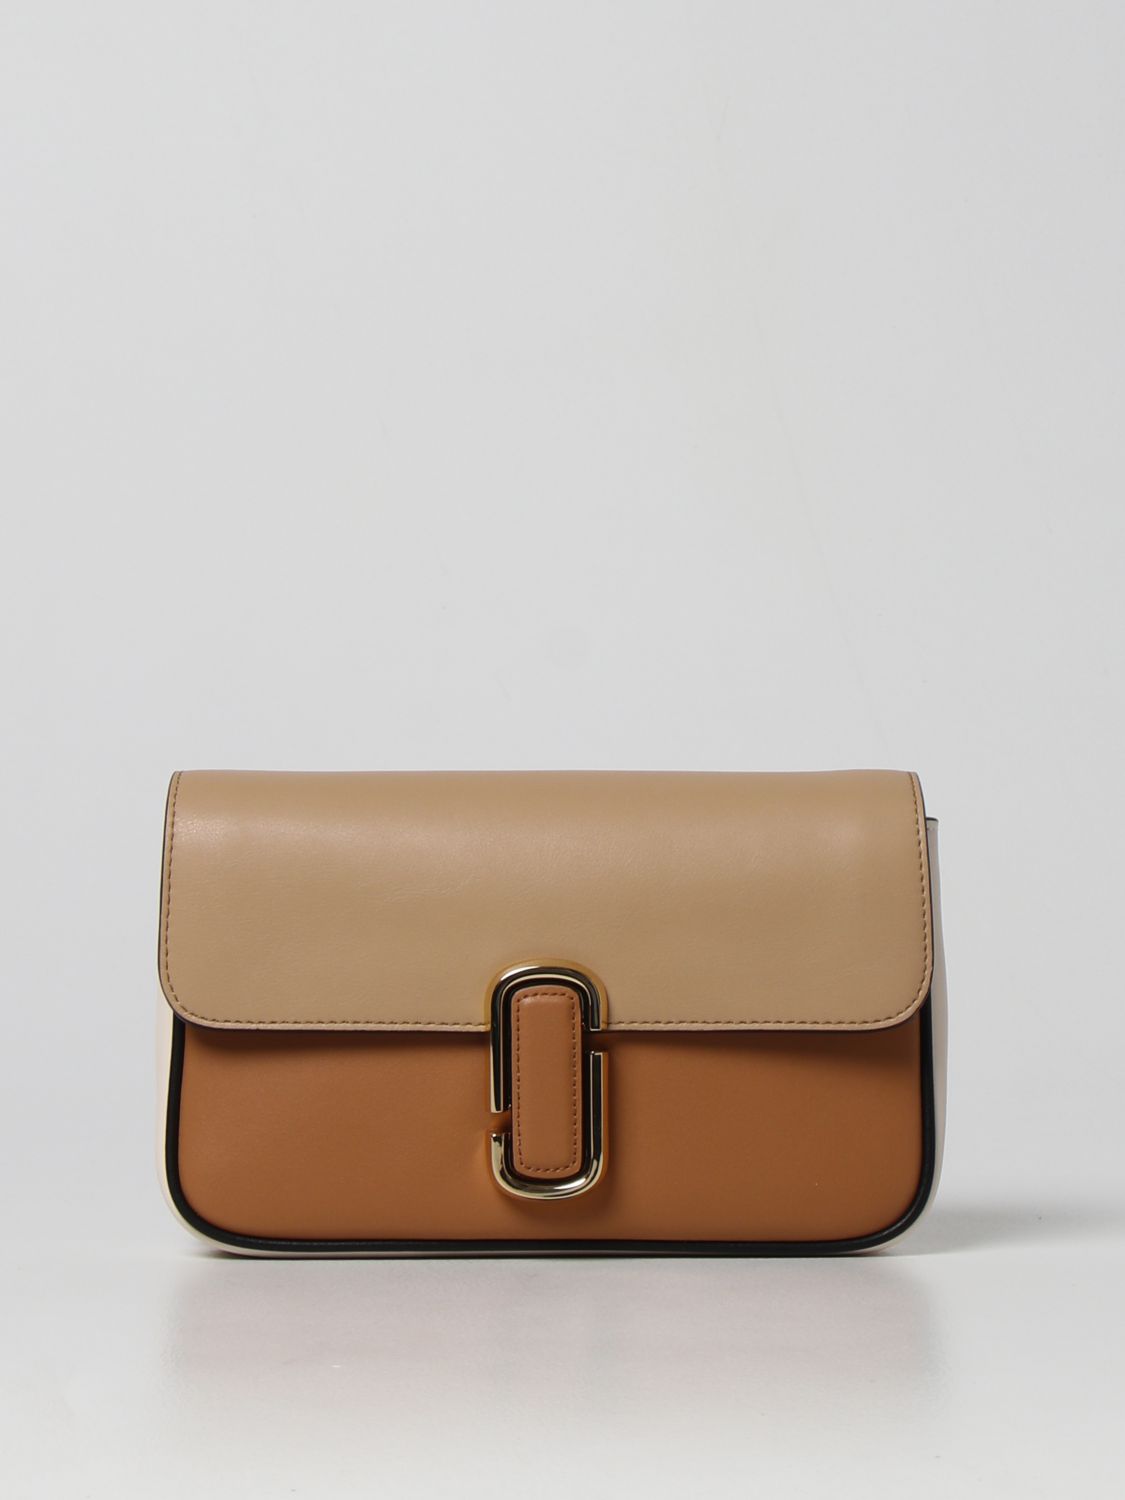 MARC JACOBS: The J leather bag - Brown  Marc Jacobs shoulder bag  H966L01PF22 online at